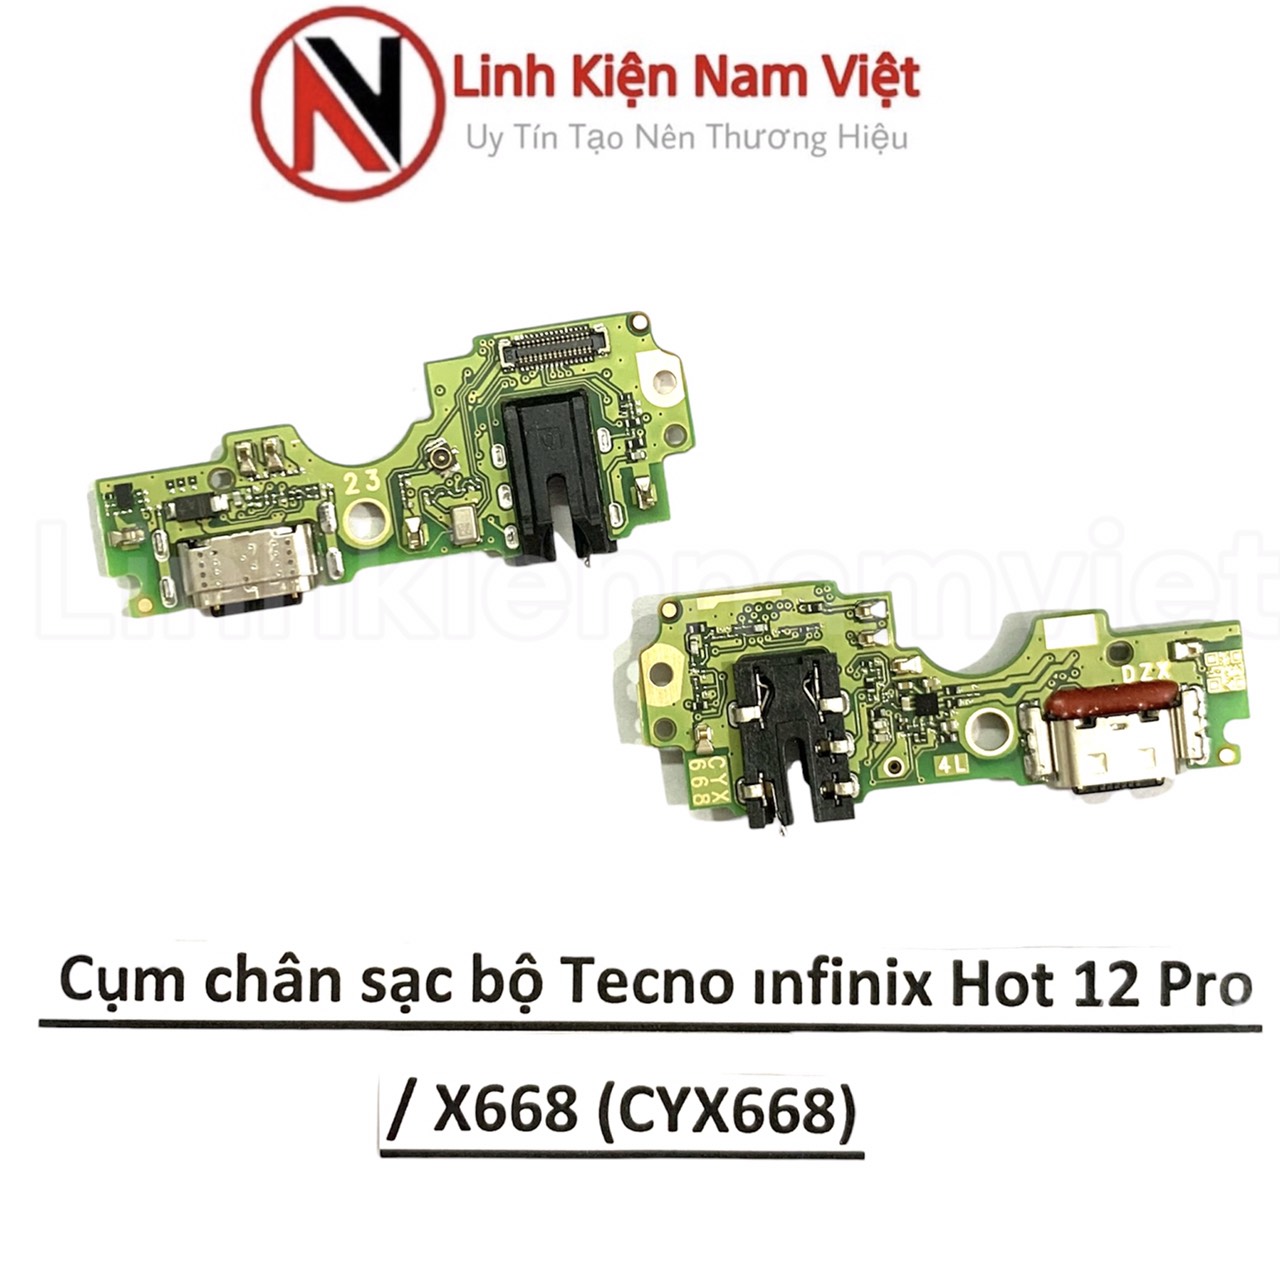 Cụm chân sạc bộ Tecno infinix Hot 12 Pro / X668 (CYX668)